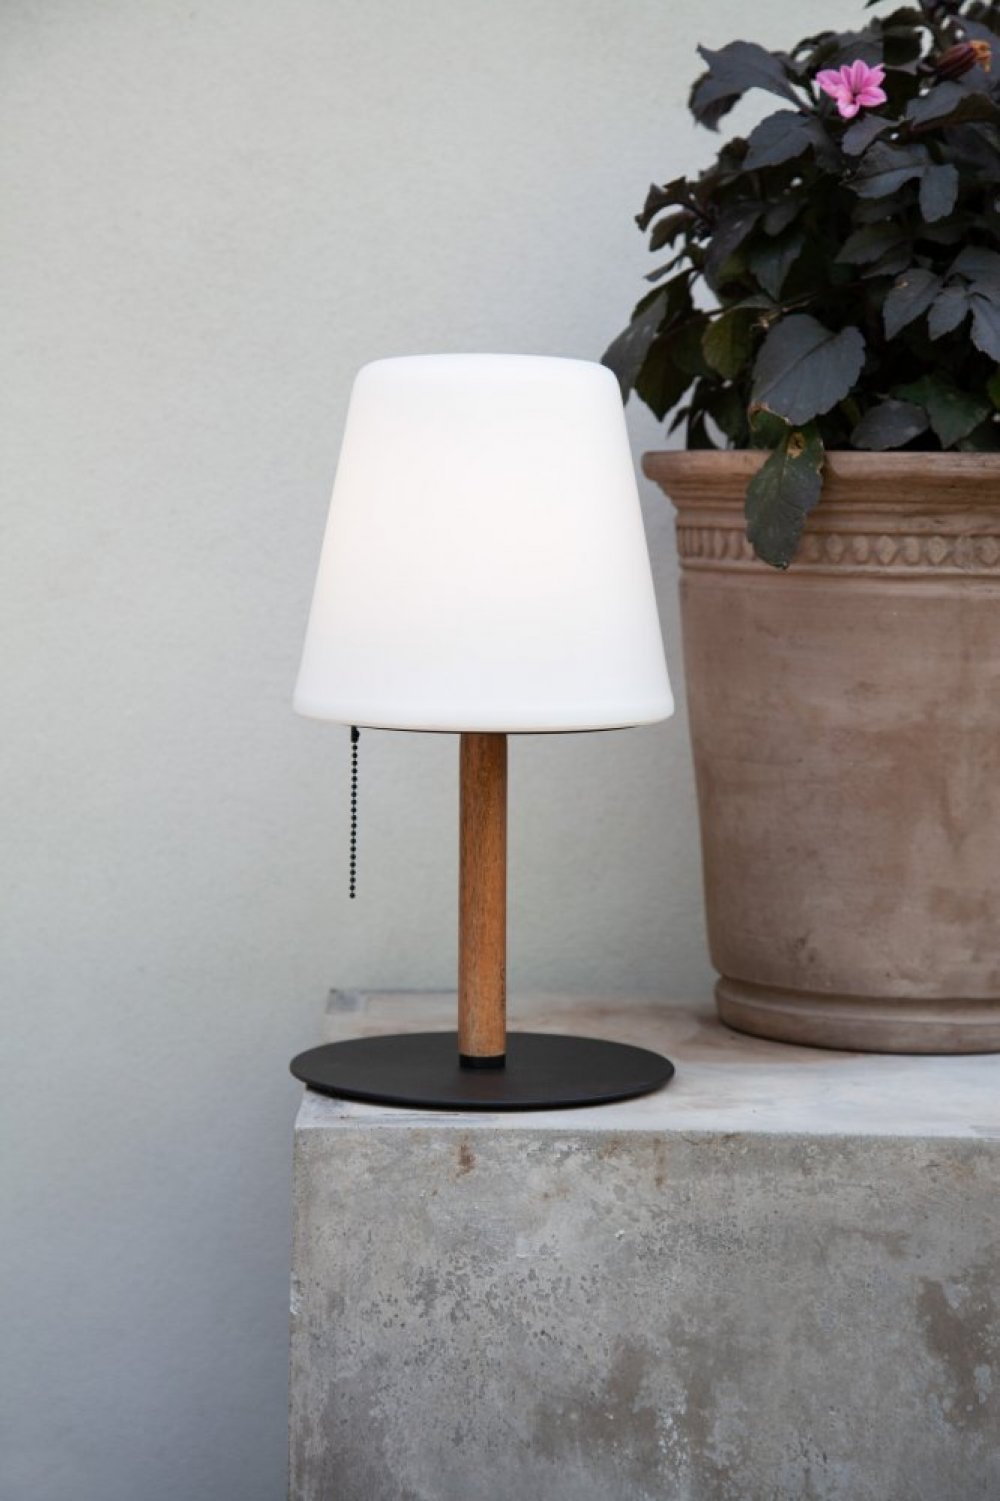 & Tischleuchte Lampen Design indoor LED --> COLORS online Shop Leuchten Halo im kaufen outdoor NORTHERN 800704 No.